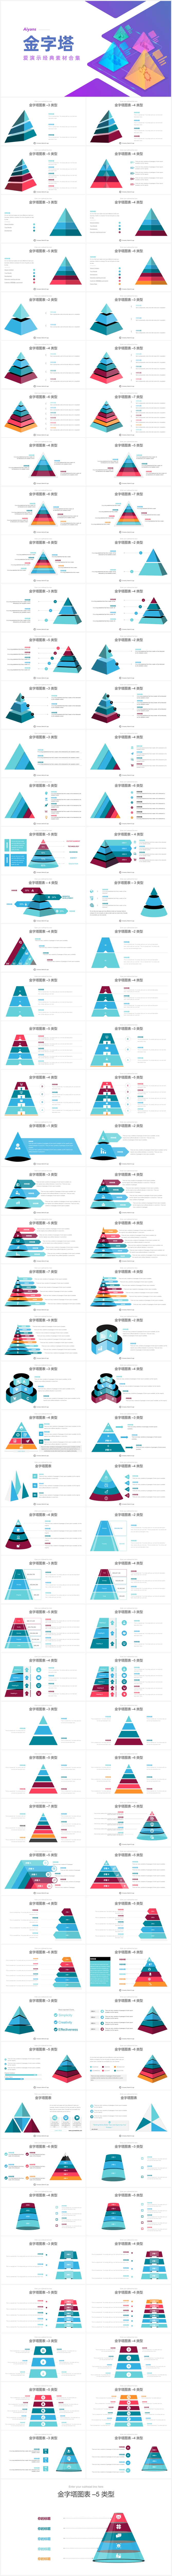 金字塔图形数据图表分析PPT素材合集